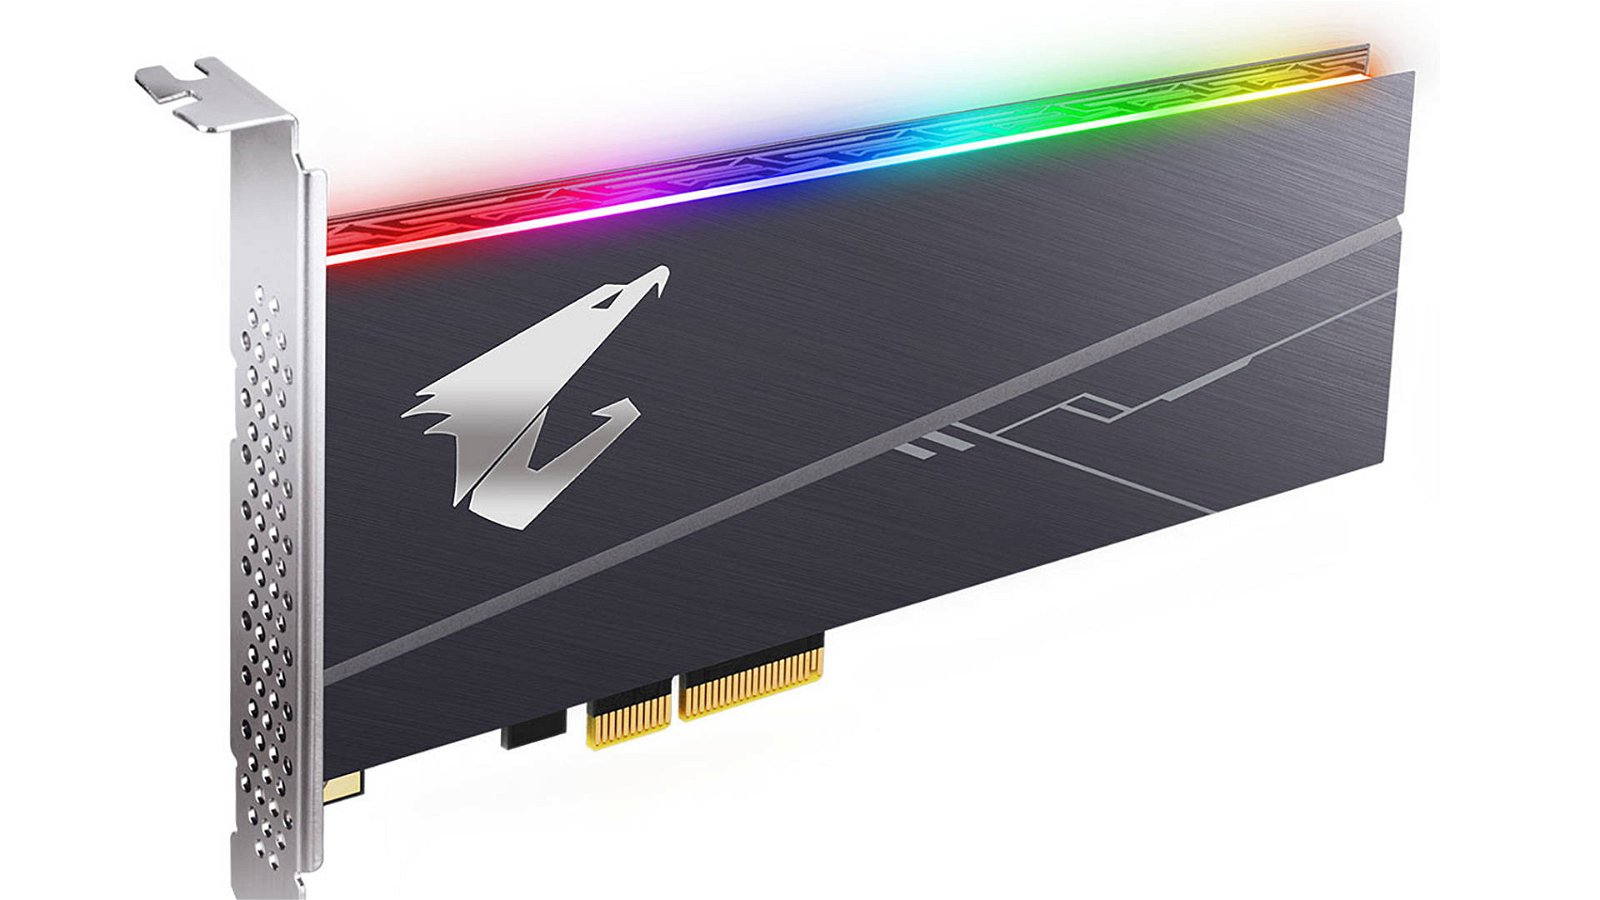 Immagine di Gigabyte, nuovi SSD Aorus RGB in formato PCI Express